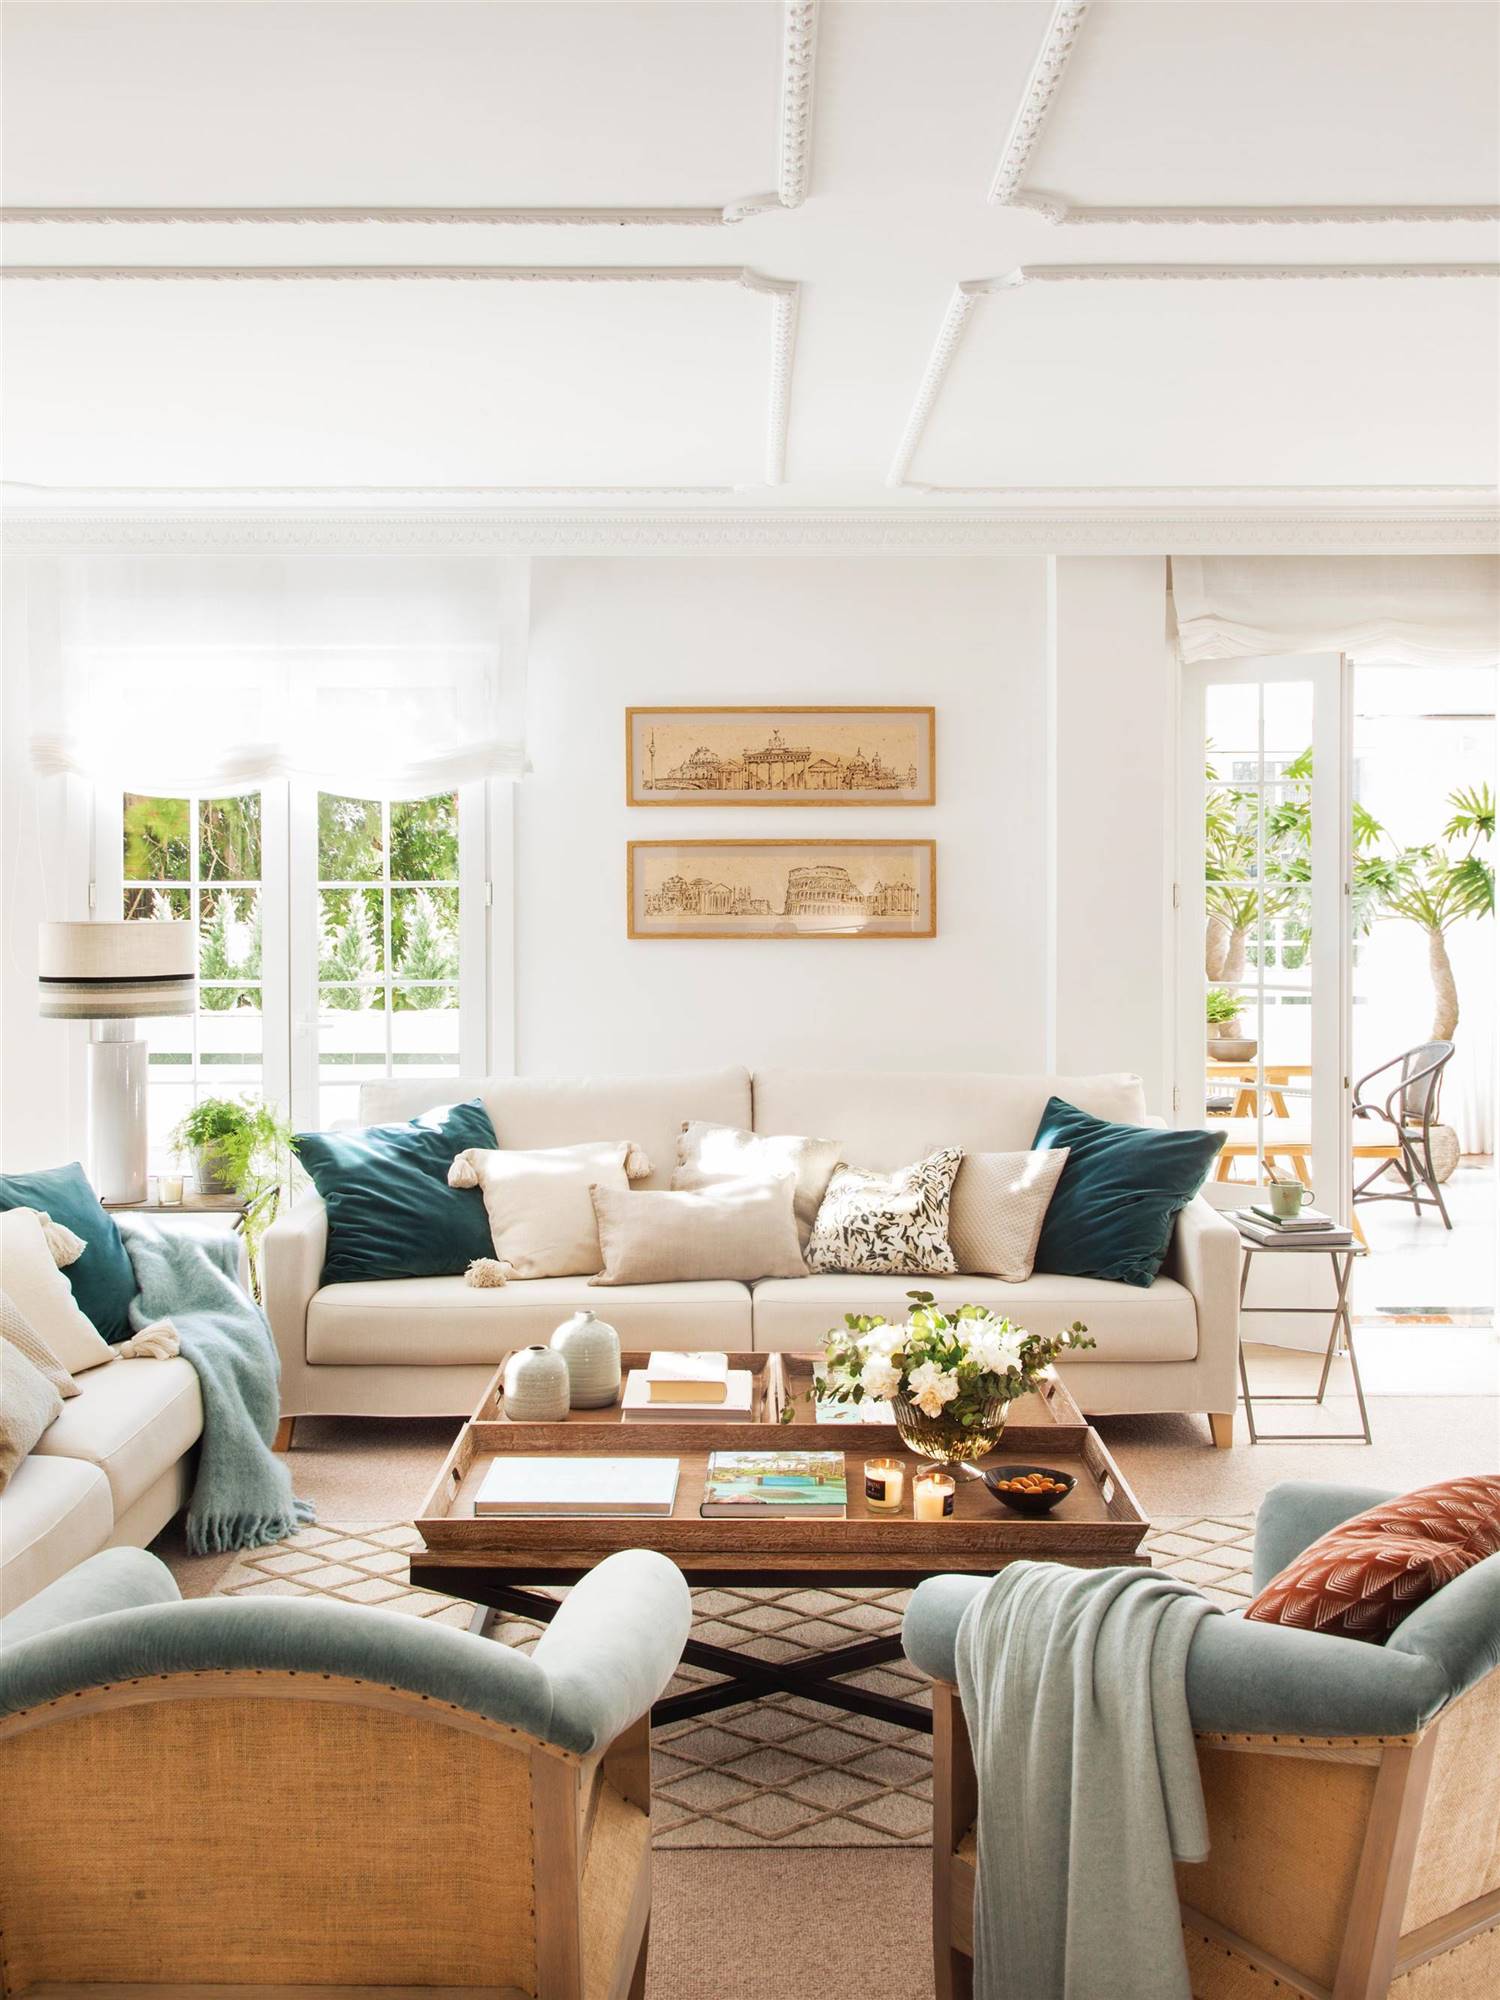 Salón con sofás de color blanco roto, butacas verdes y molduras en el techo 00506958